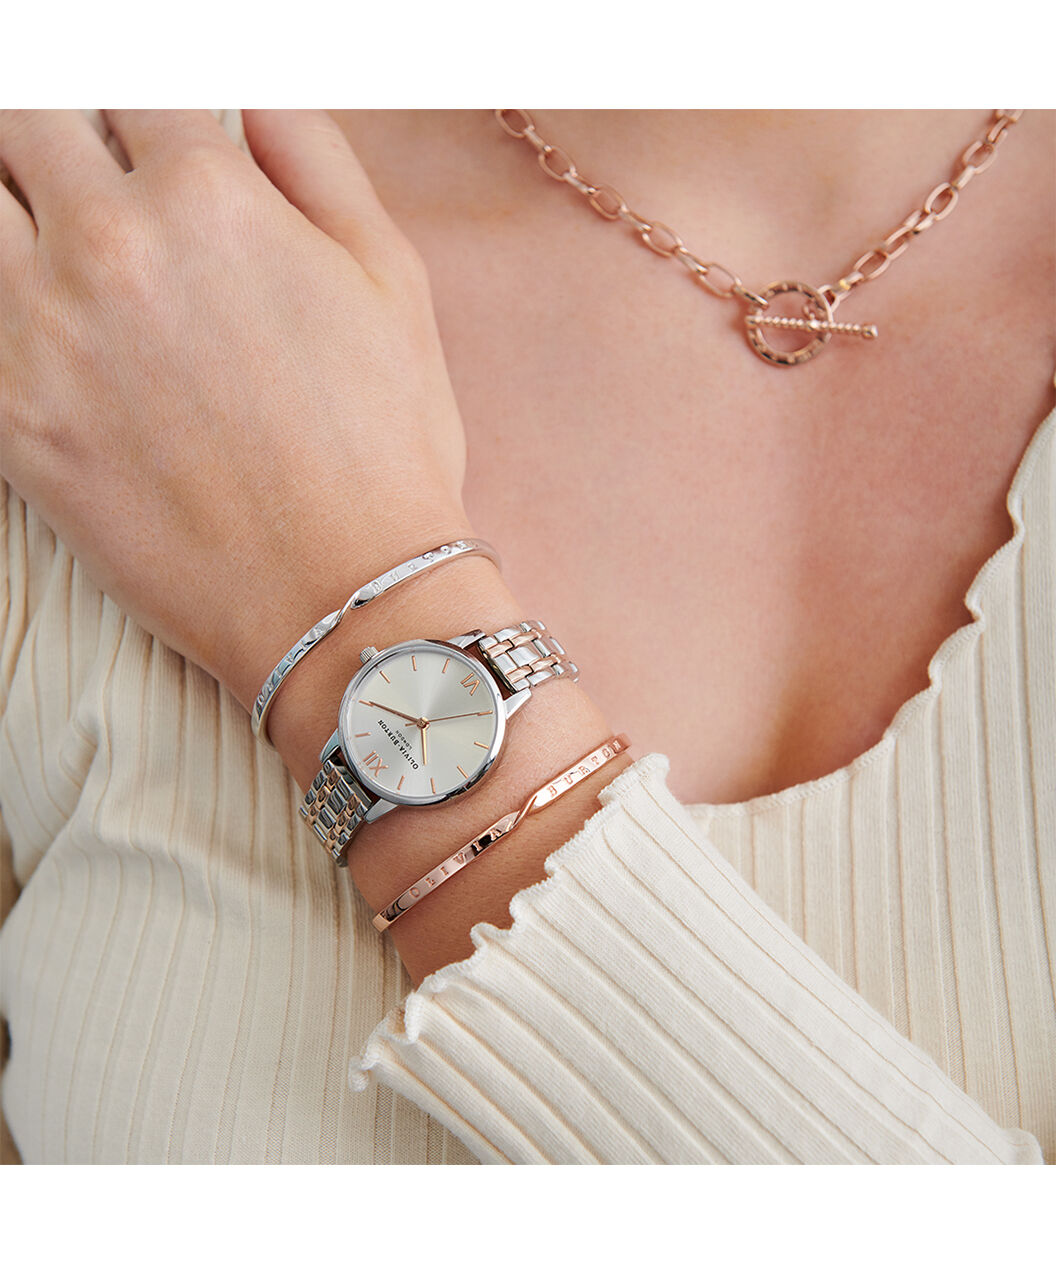 Amazon.com: Weicam Women's Diamond Wristwatch Bangle Bracelet Jewelry Set  Analog Quartz Wrist Watch for Ladies (Gold) : Clothing, Shoes & Jewelry